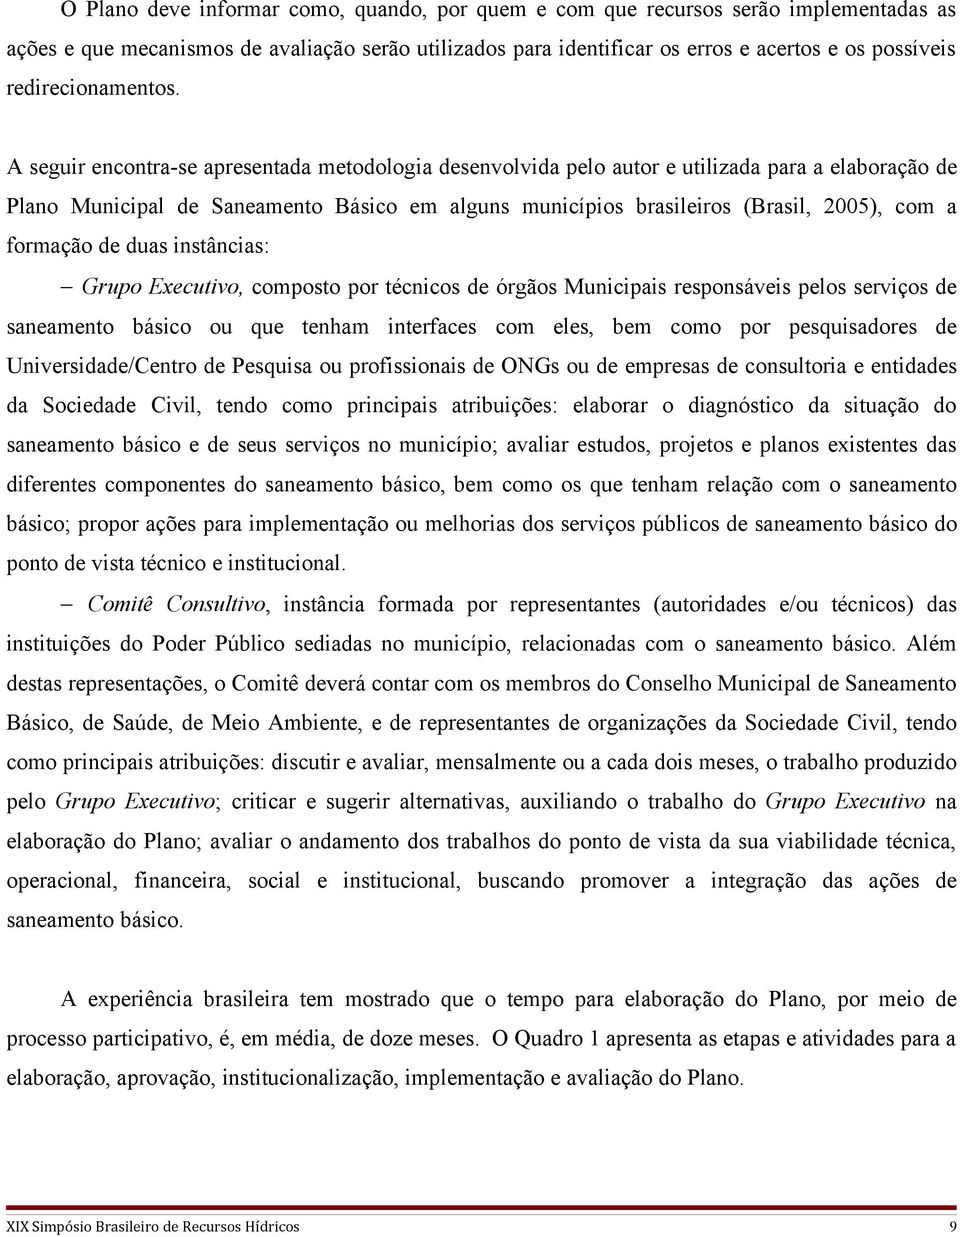 A seguir encontra-se apresentada metodologia desenvolvida pelo autor e utilizada para a elaboração de Plano Municipal de Saneamento Básico em alguns municípios brasileiros (Brasil, 2005), com a